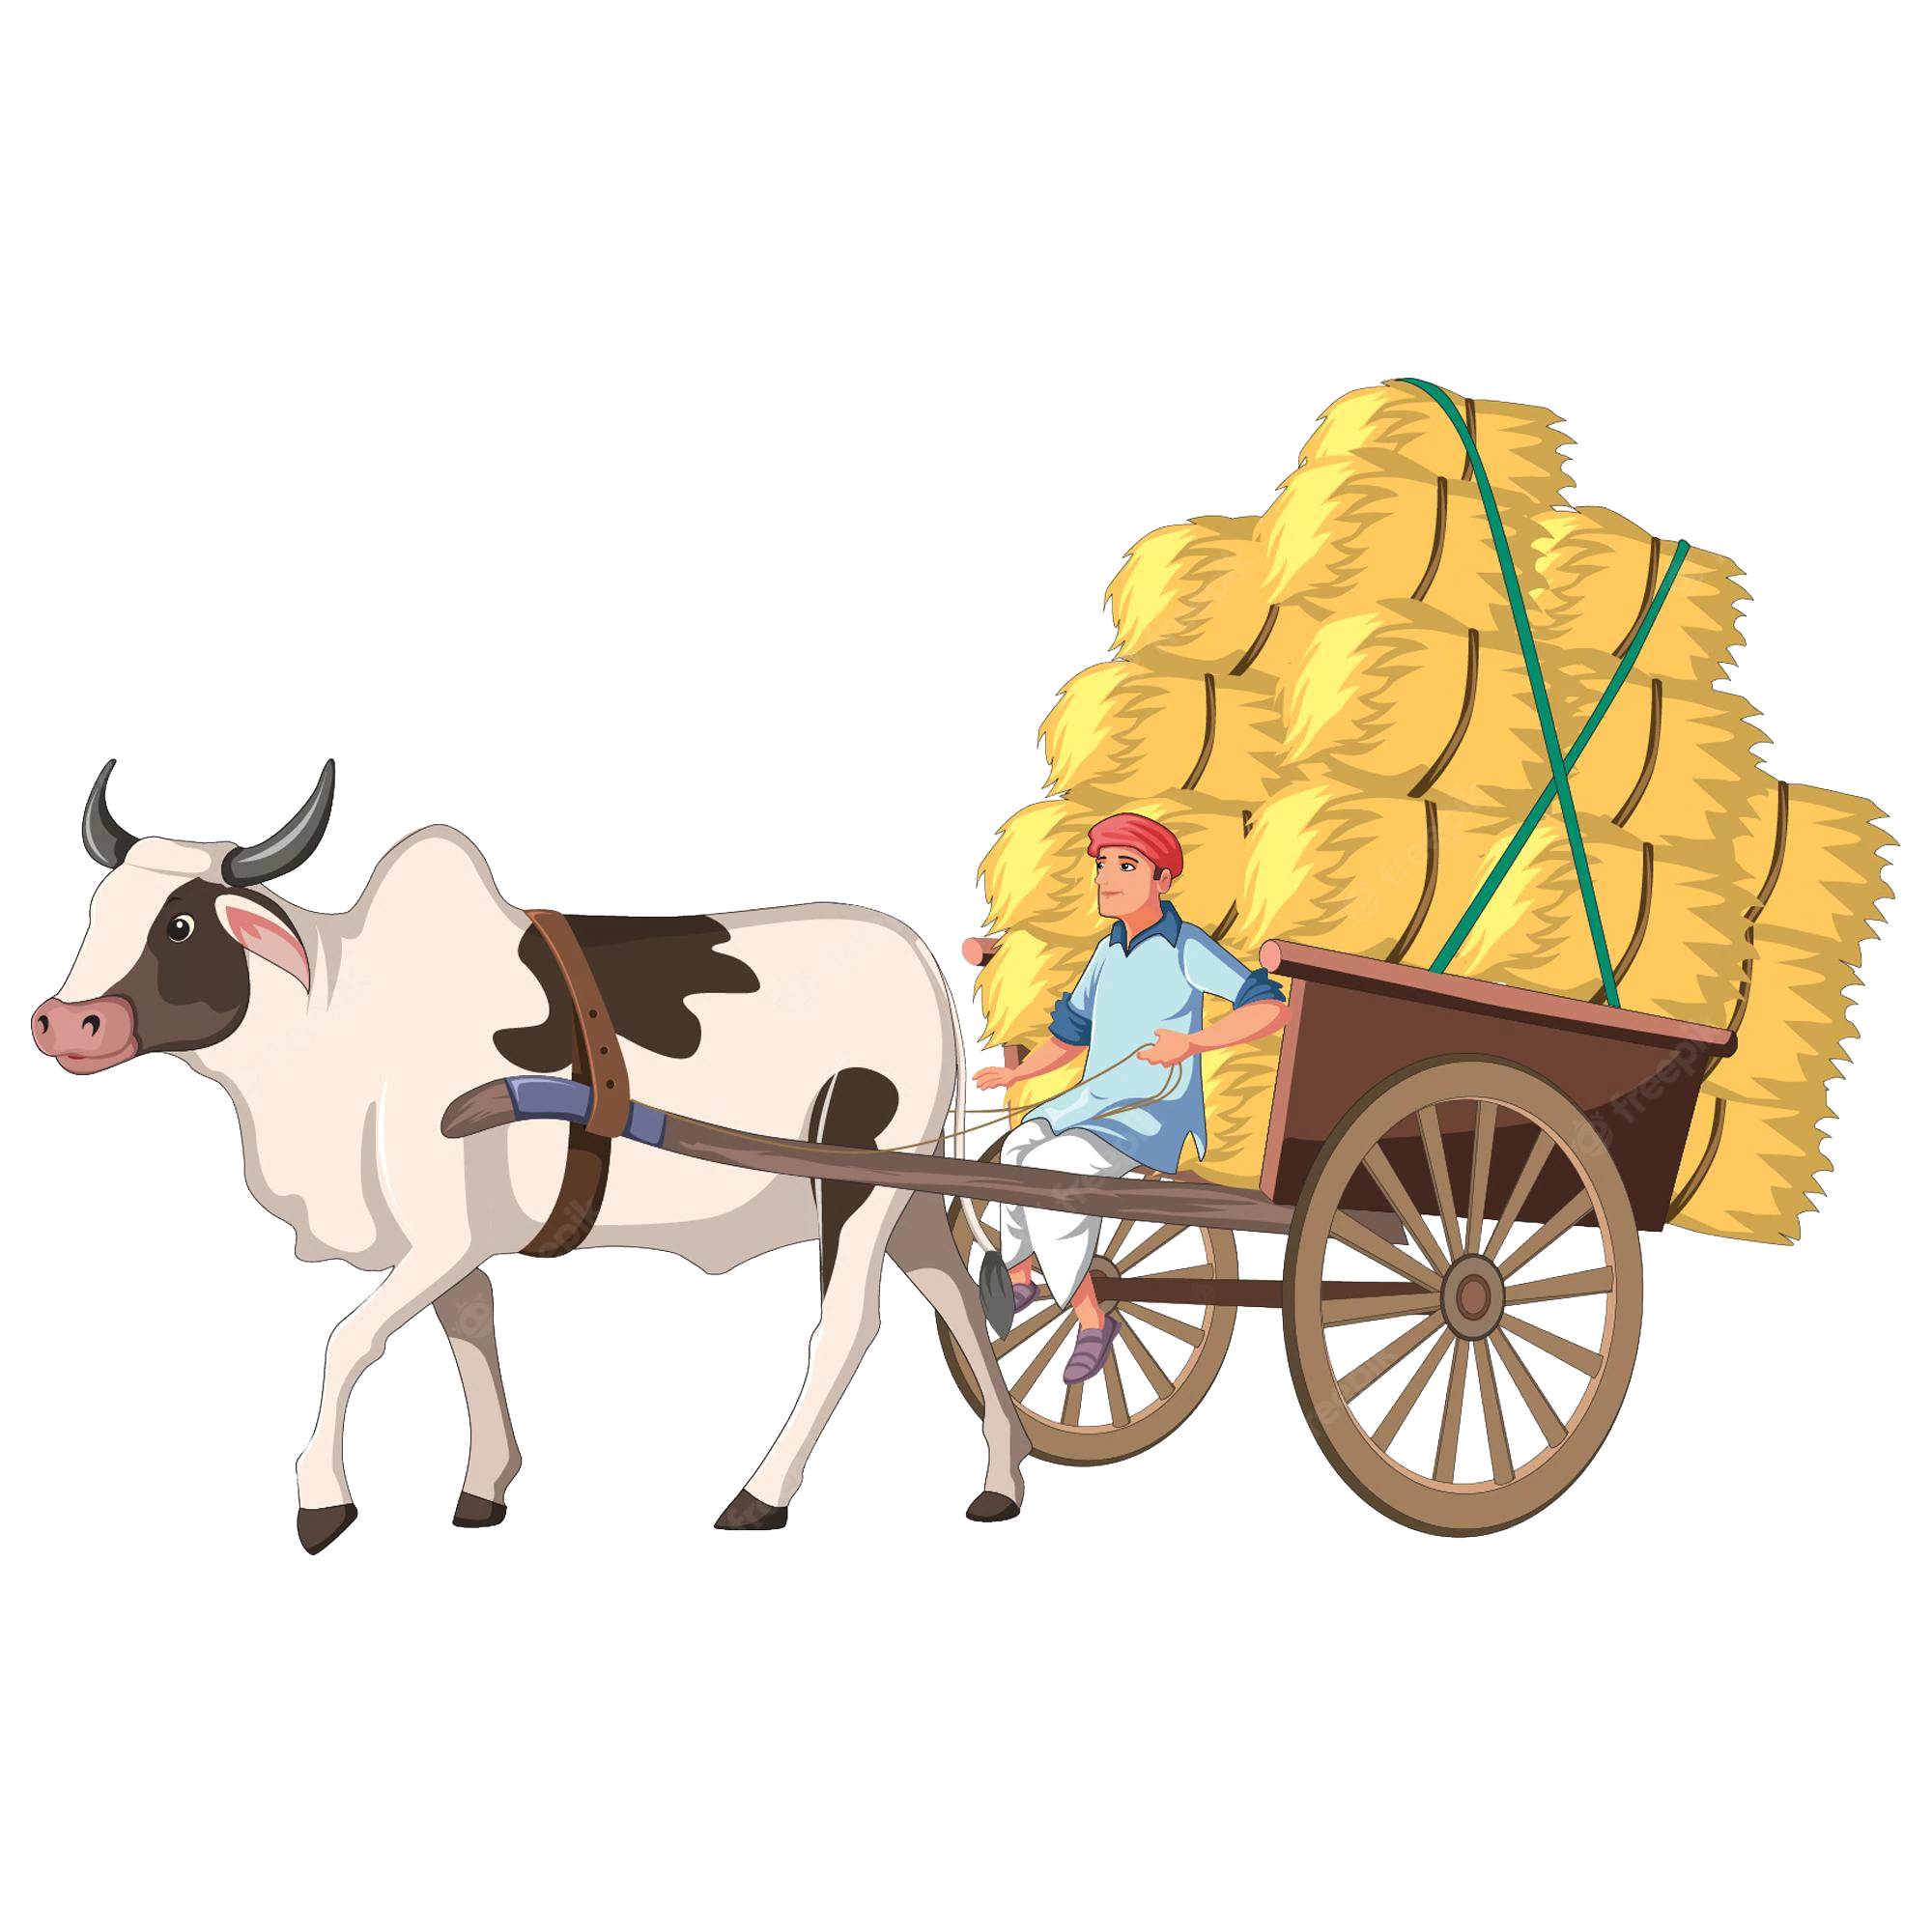 Bullock Cart Ride